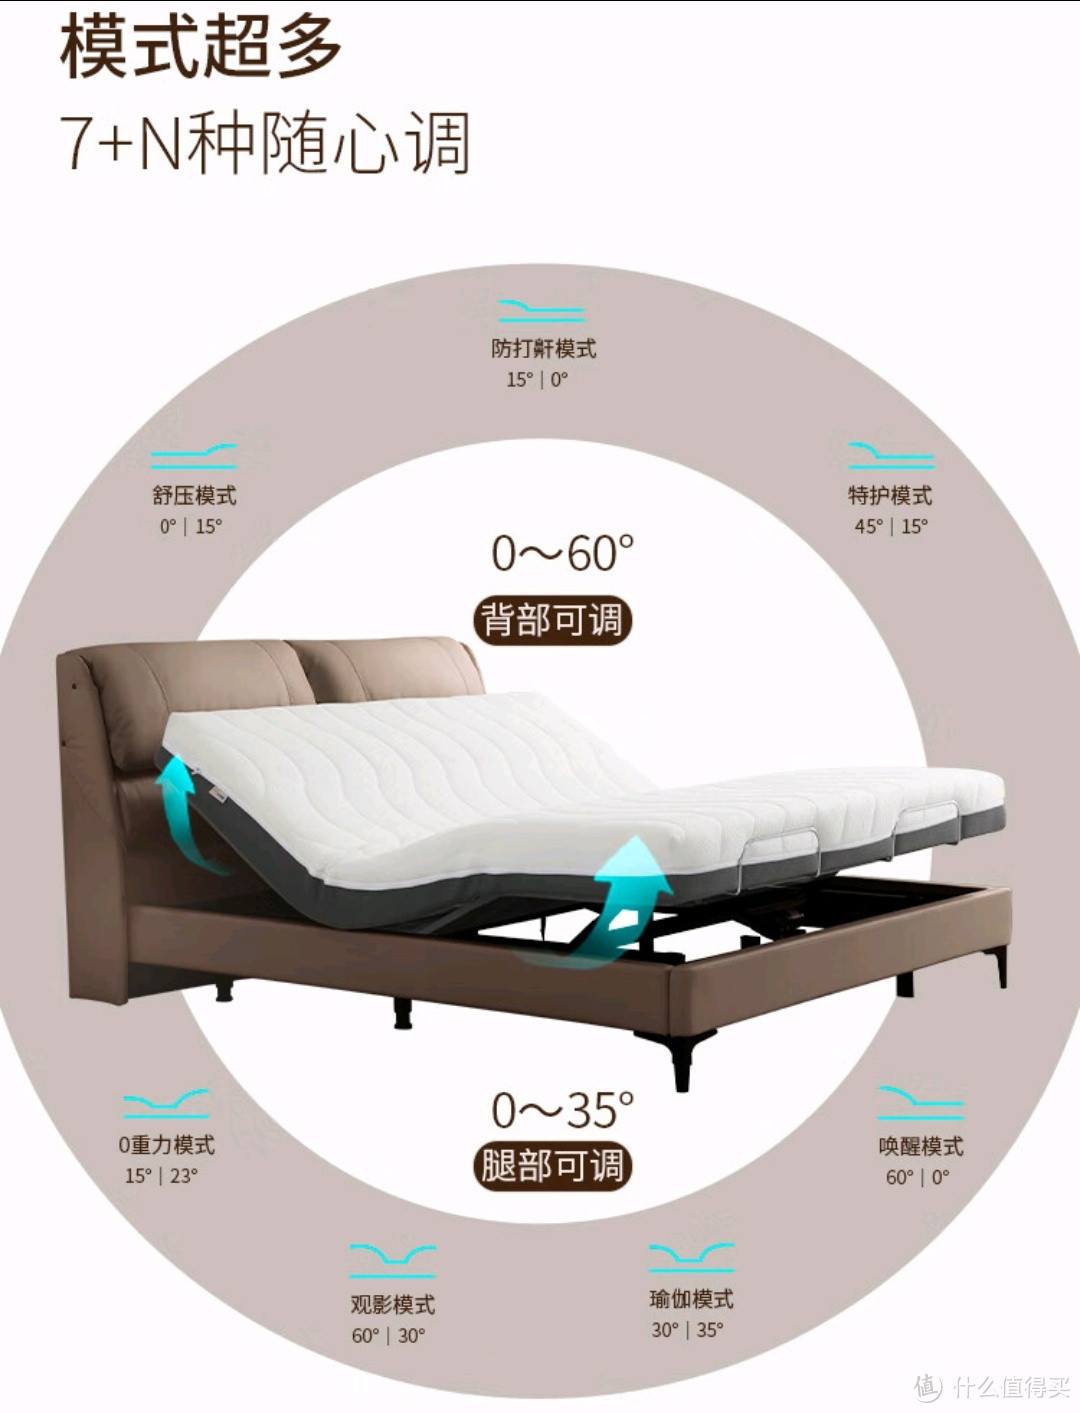 “芝华士电动床 ”舒适与科技的完美结合